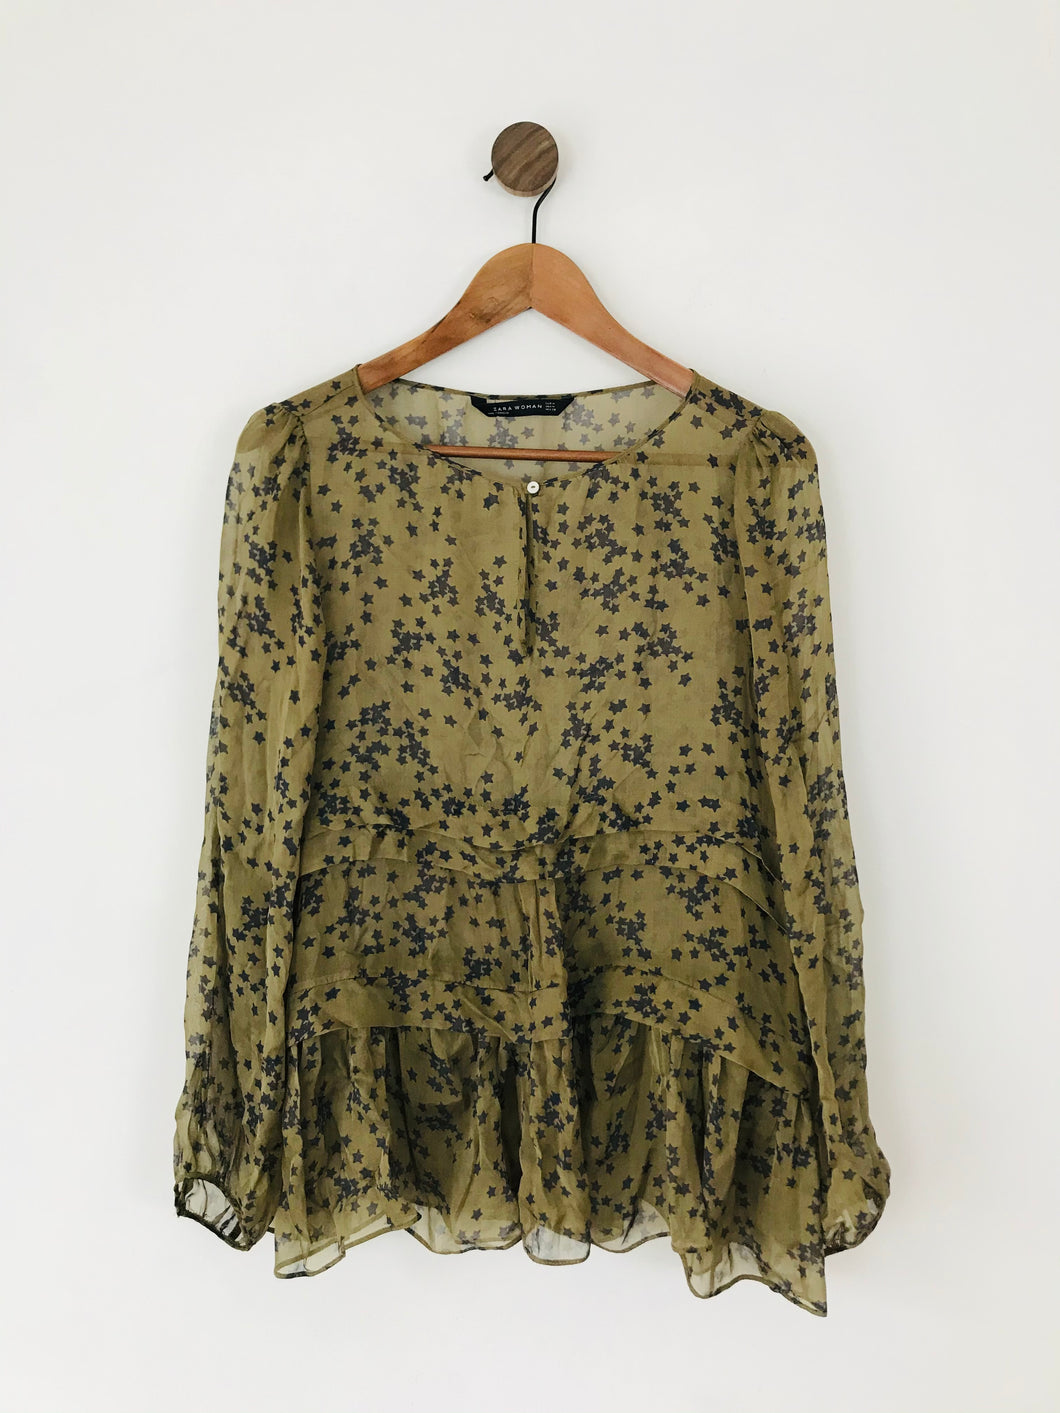 Zara Women’s Star Print Oversized Sheer Blouse | M UK12 | Green